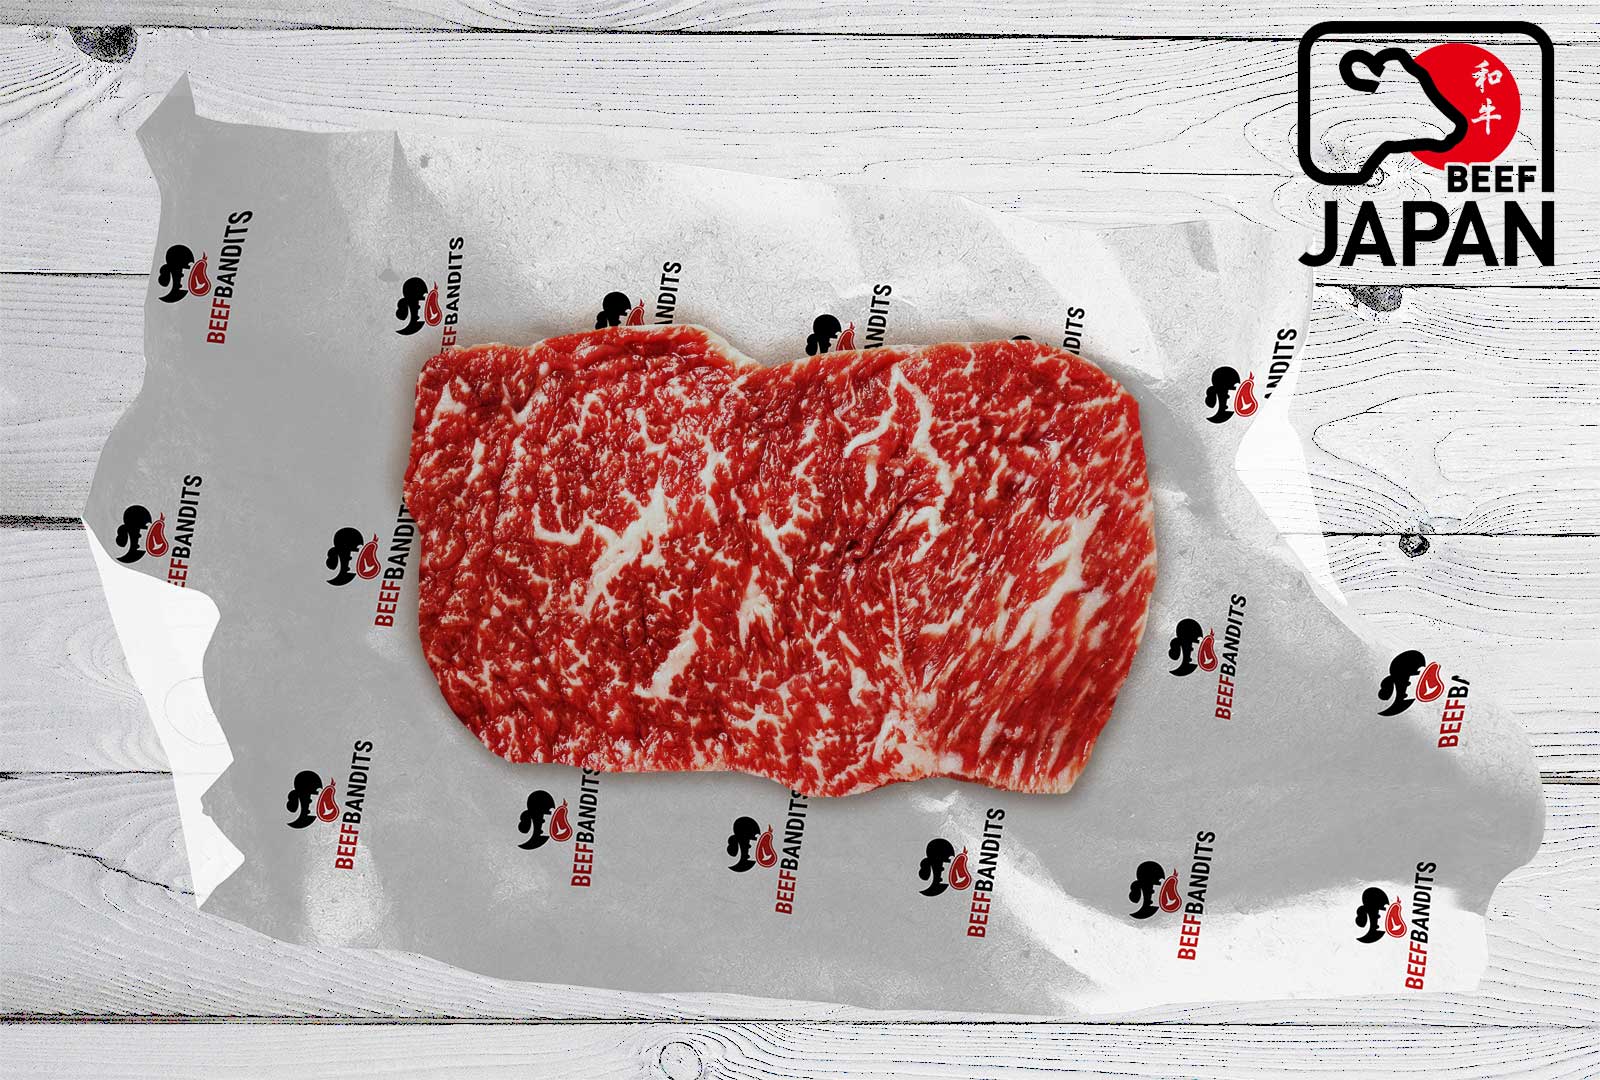 AKTION: Original Japan Wagyu A5 Filet Steak